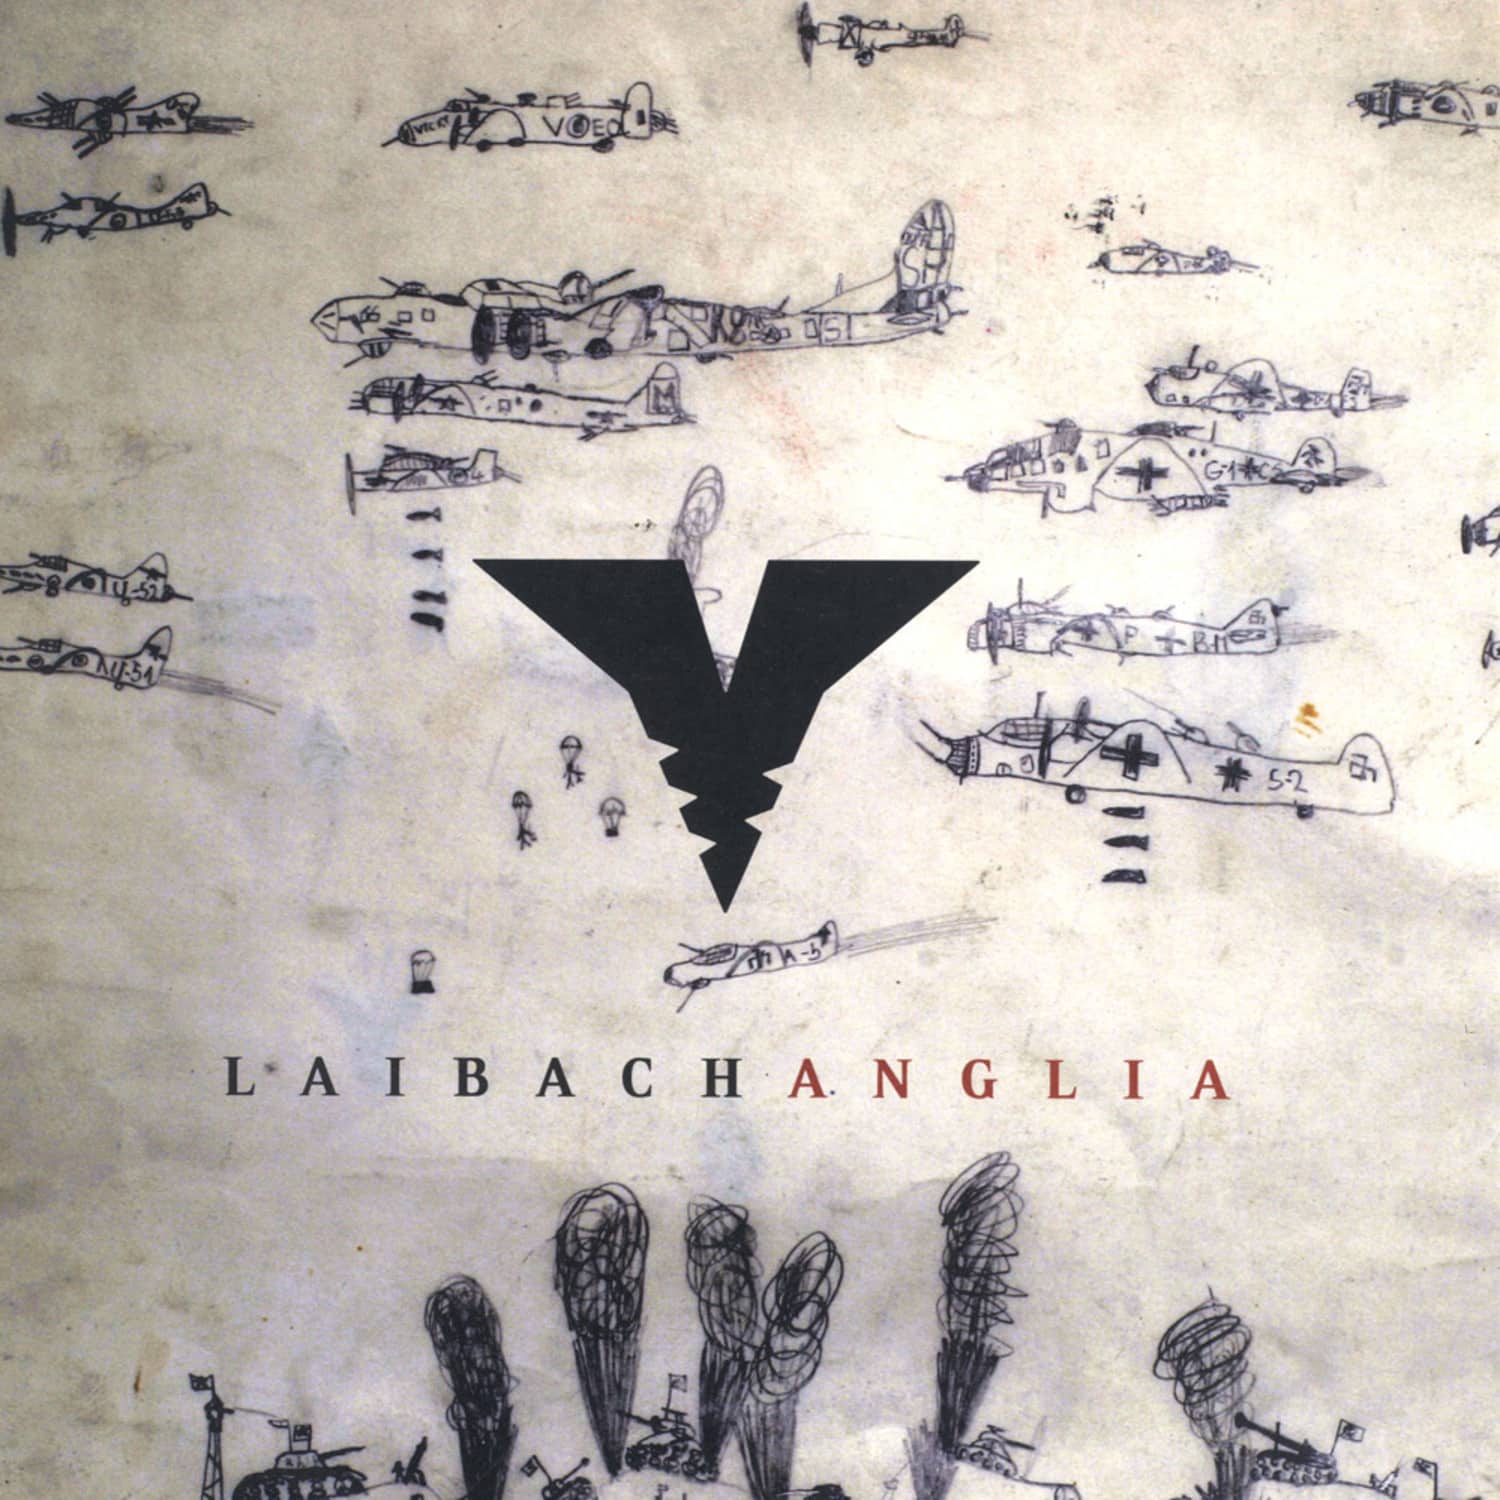 Laibach - ANGLIA